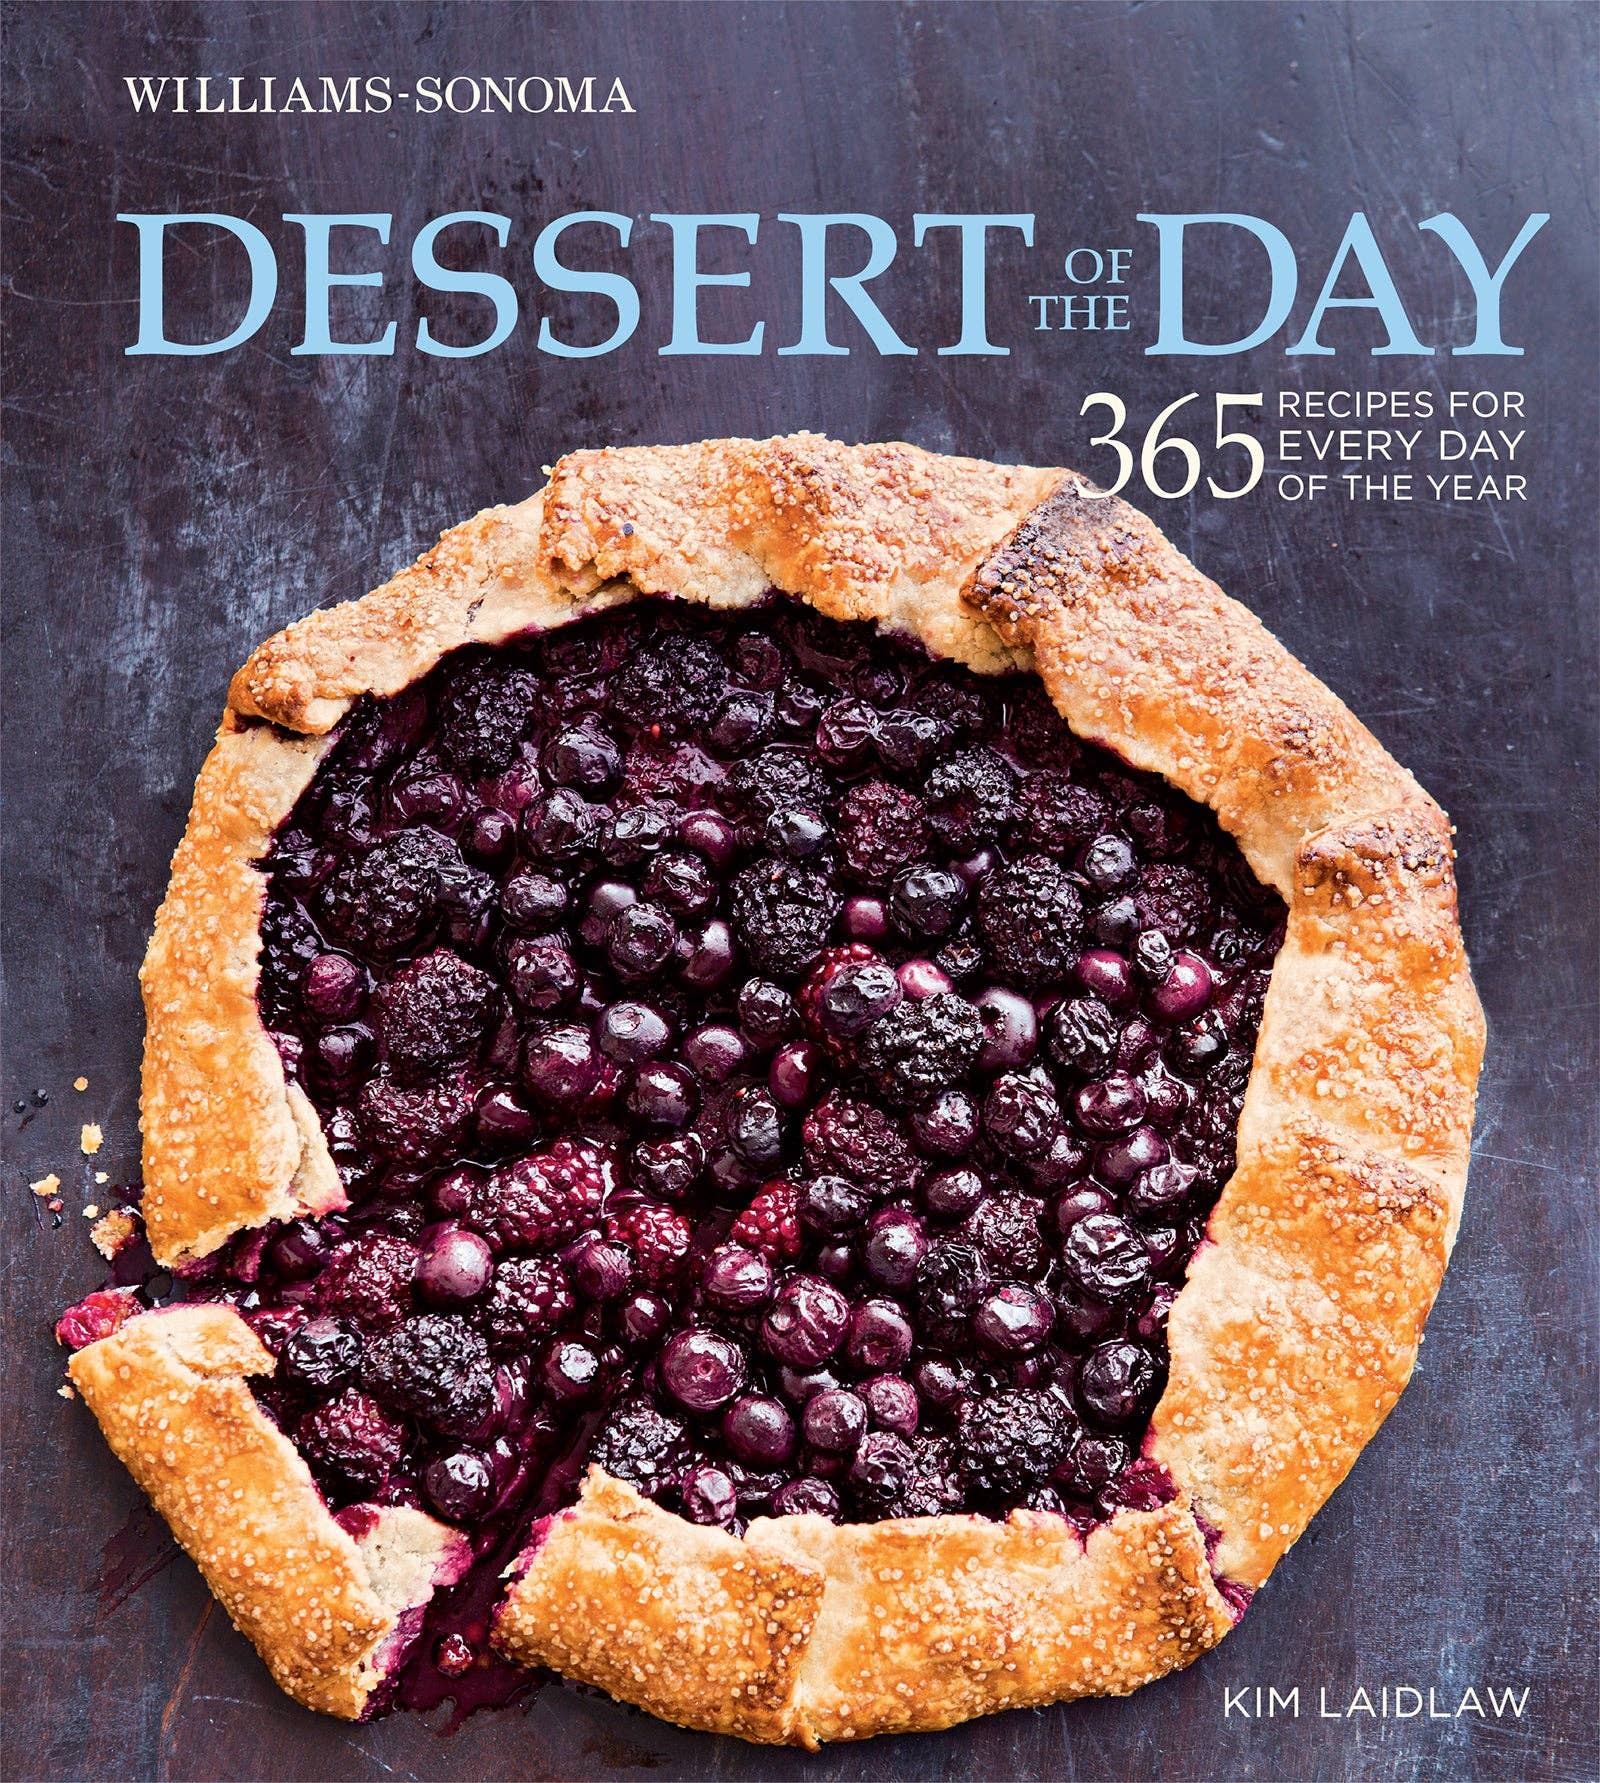 Book, Dessert of the Day (Williams-Sonoma)